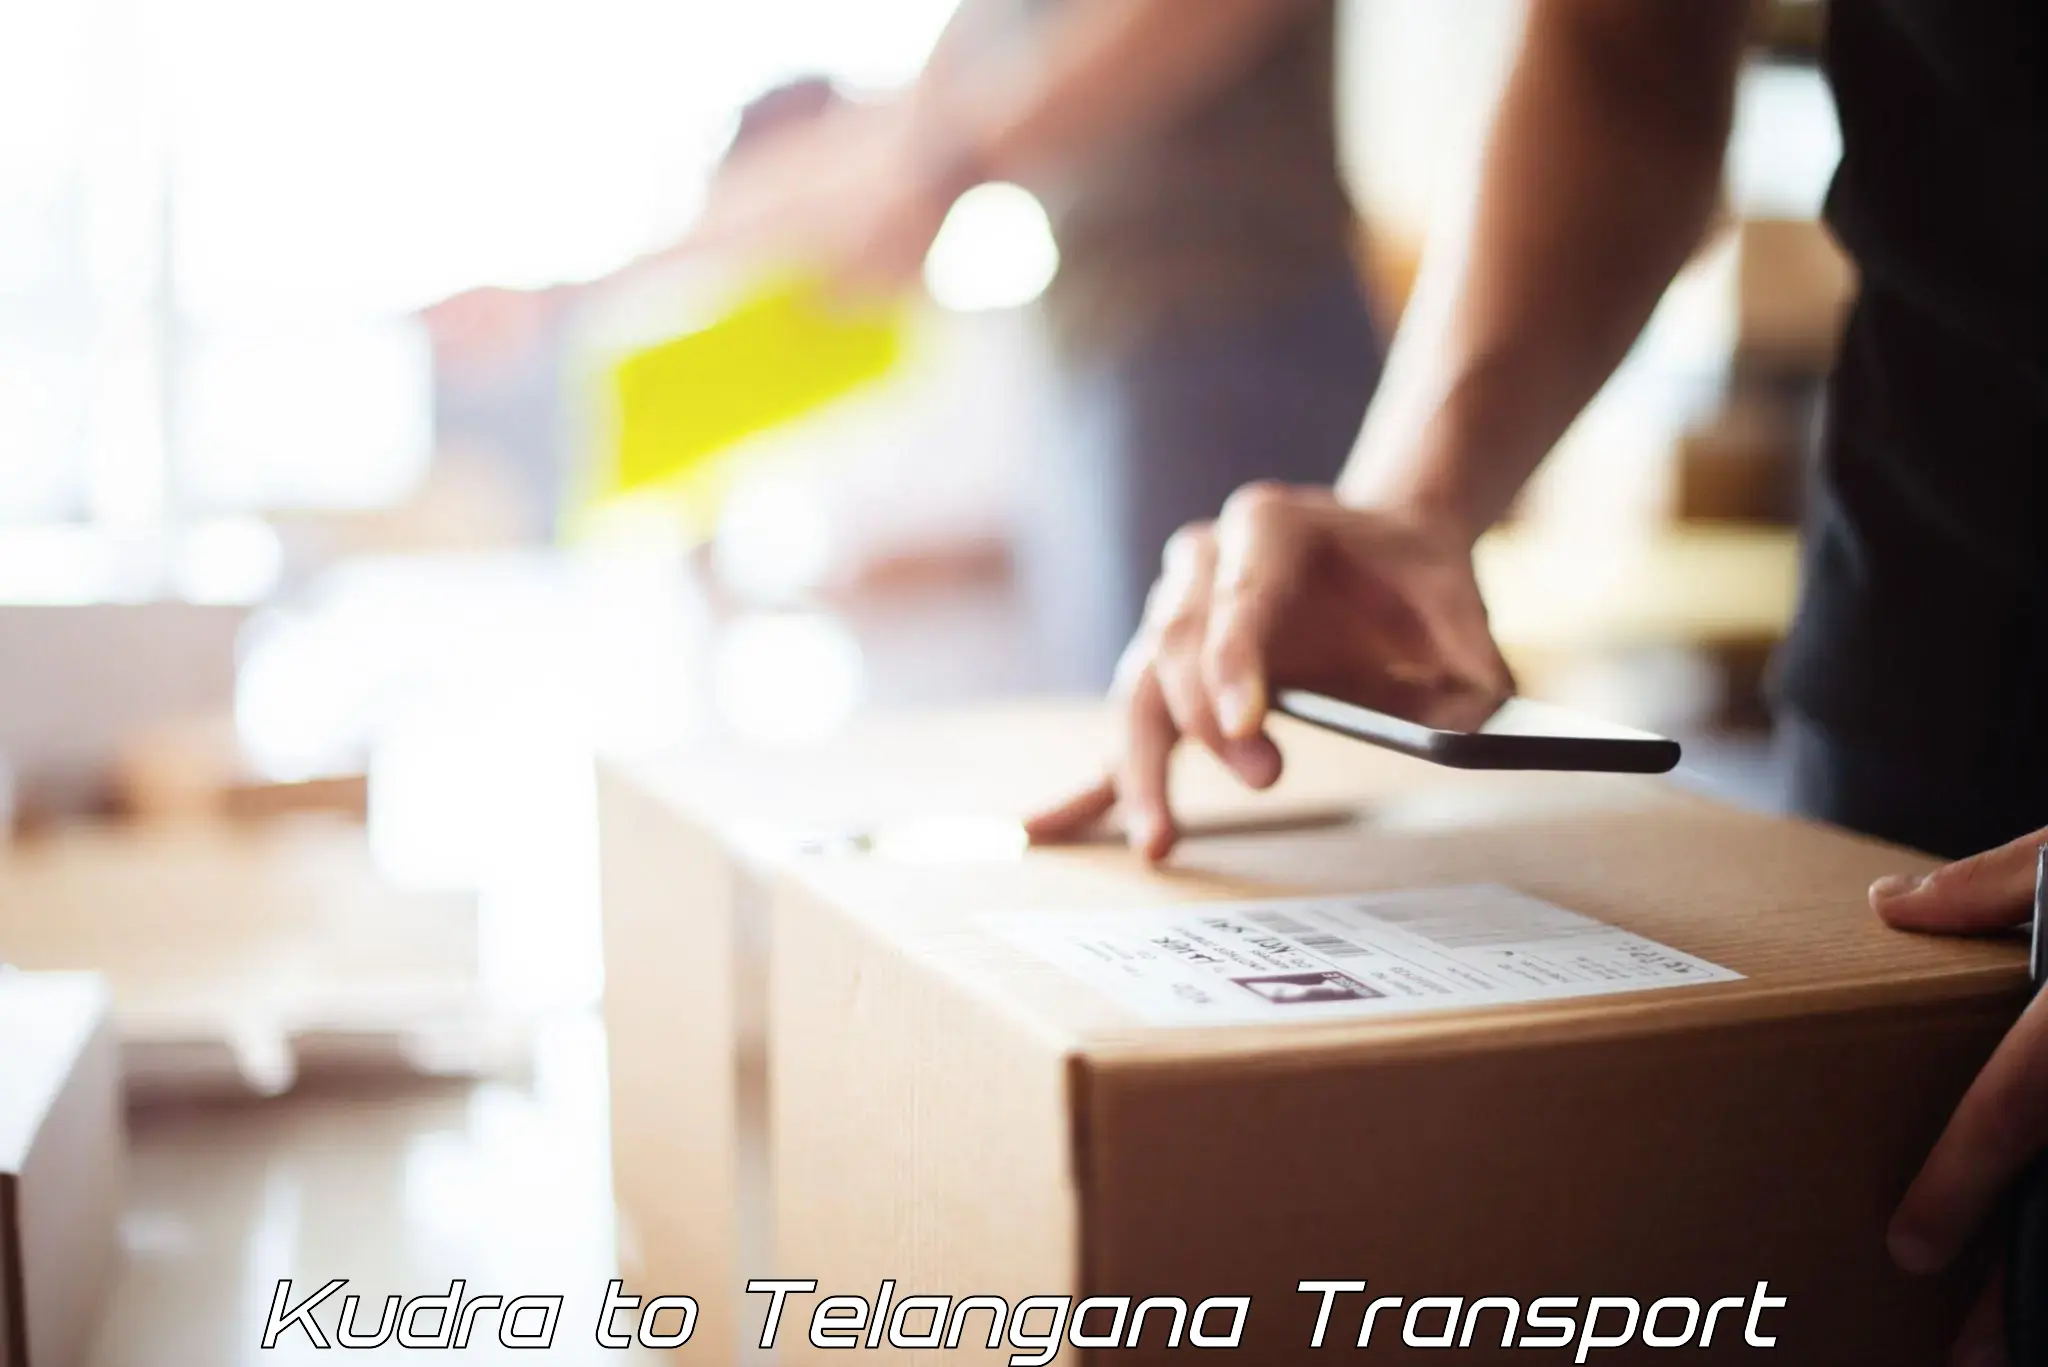 Furniture transport service Kudra to Ramagundam